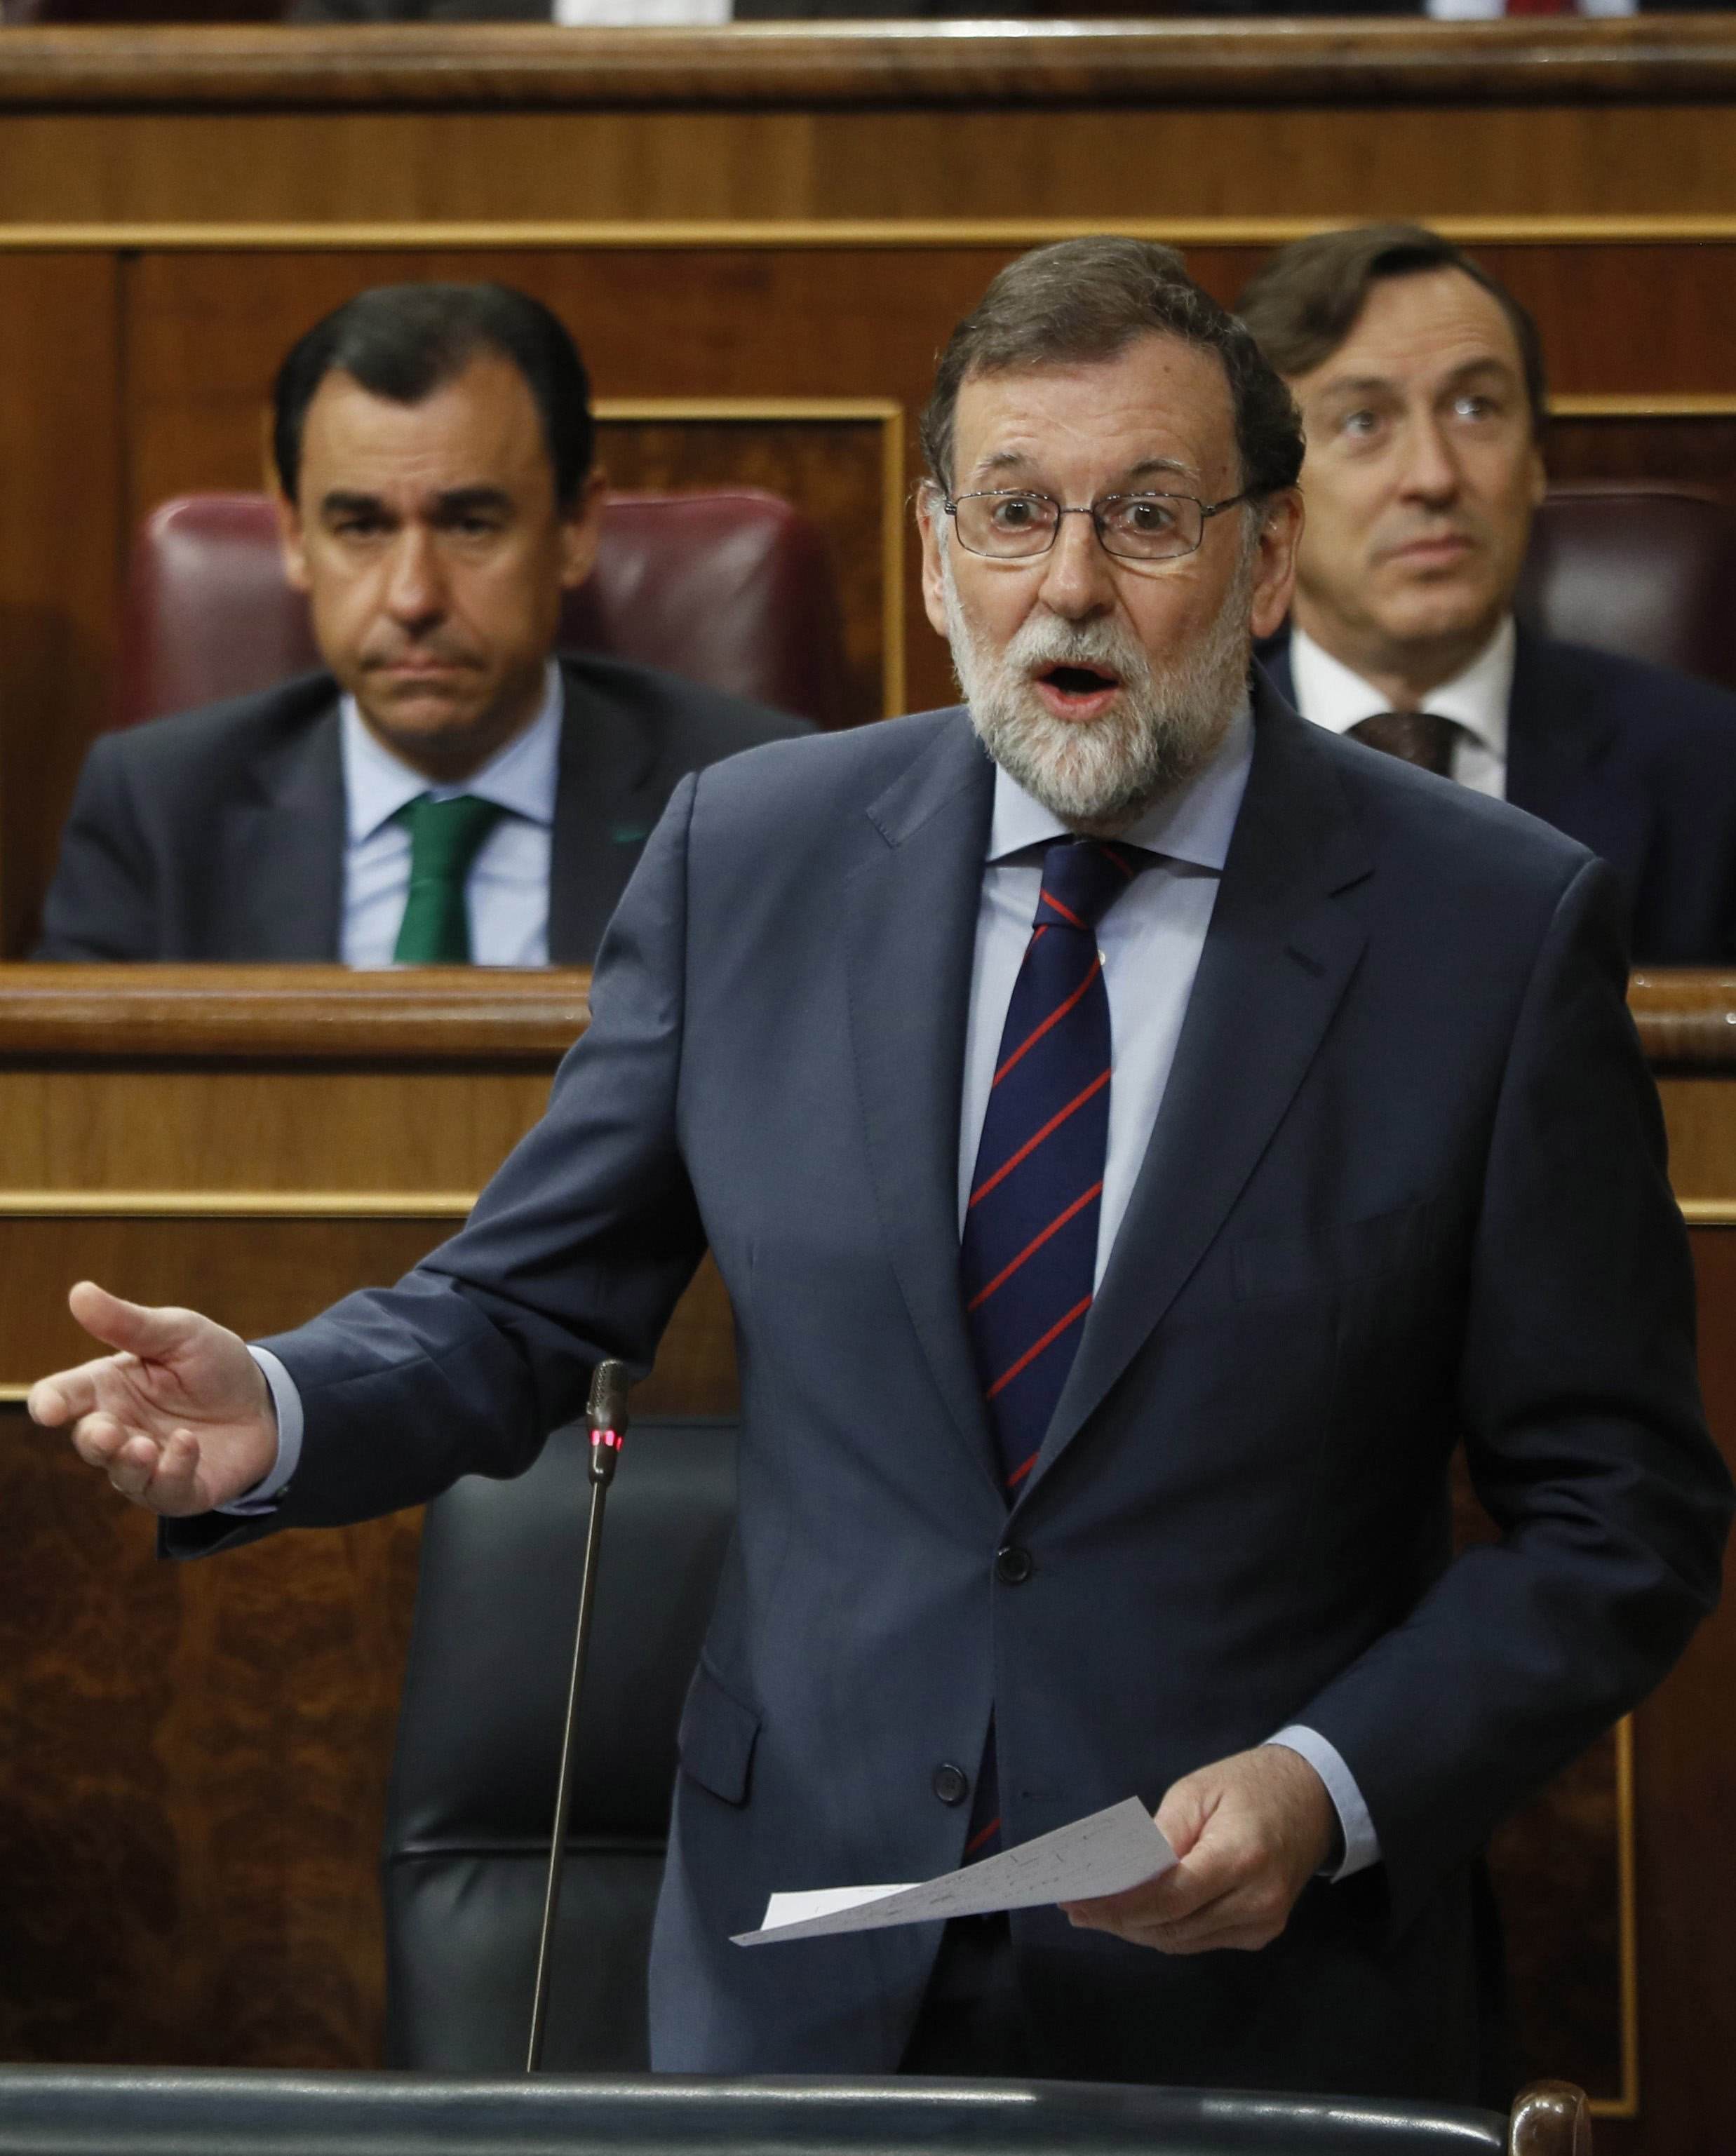 ¿Crees que Torra y Rajoy abrirán un diálogo?